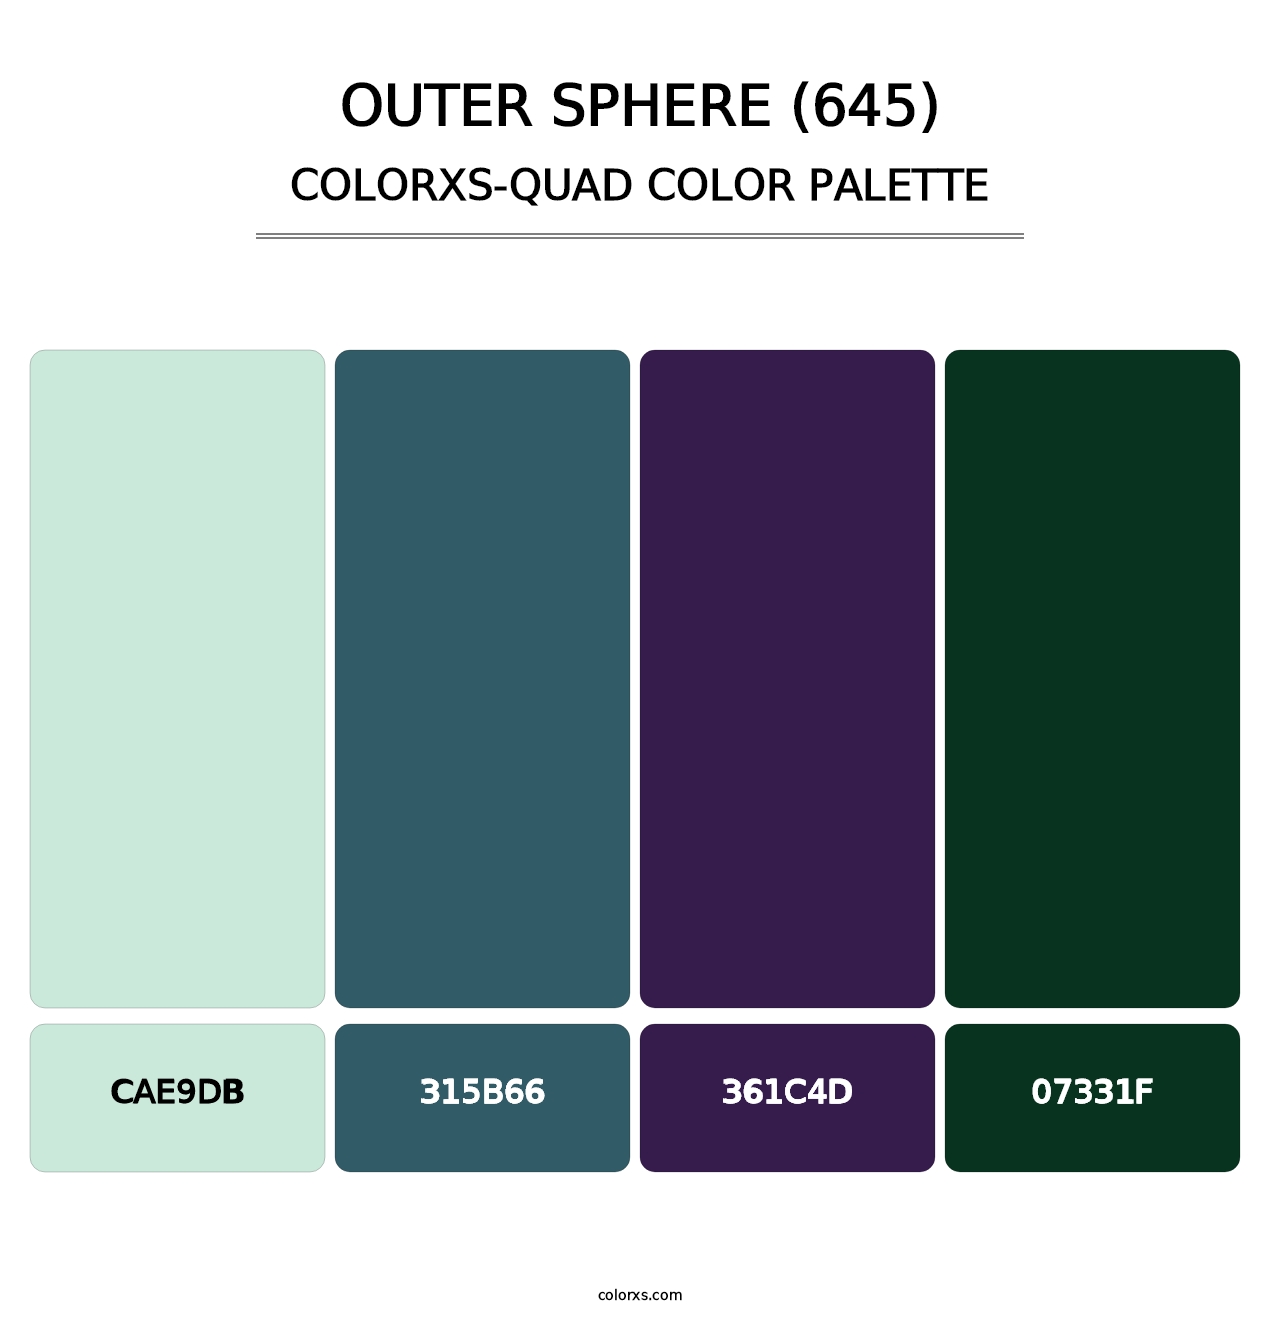 Outer Sphere (645) - Colorxs Quad Palette